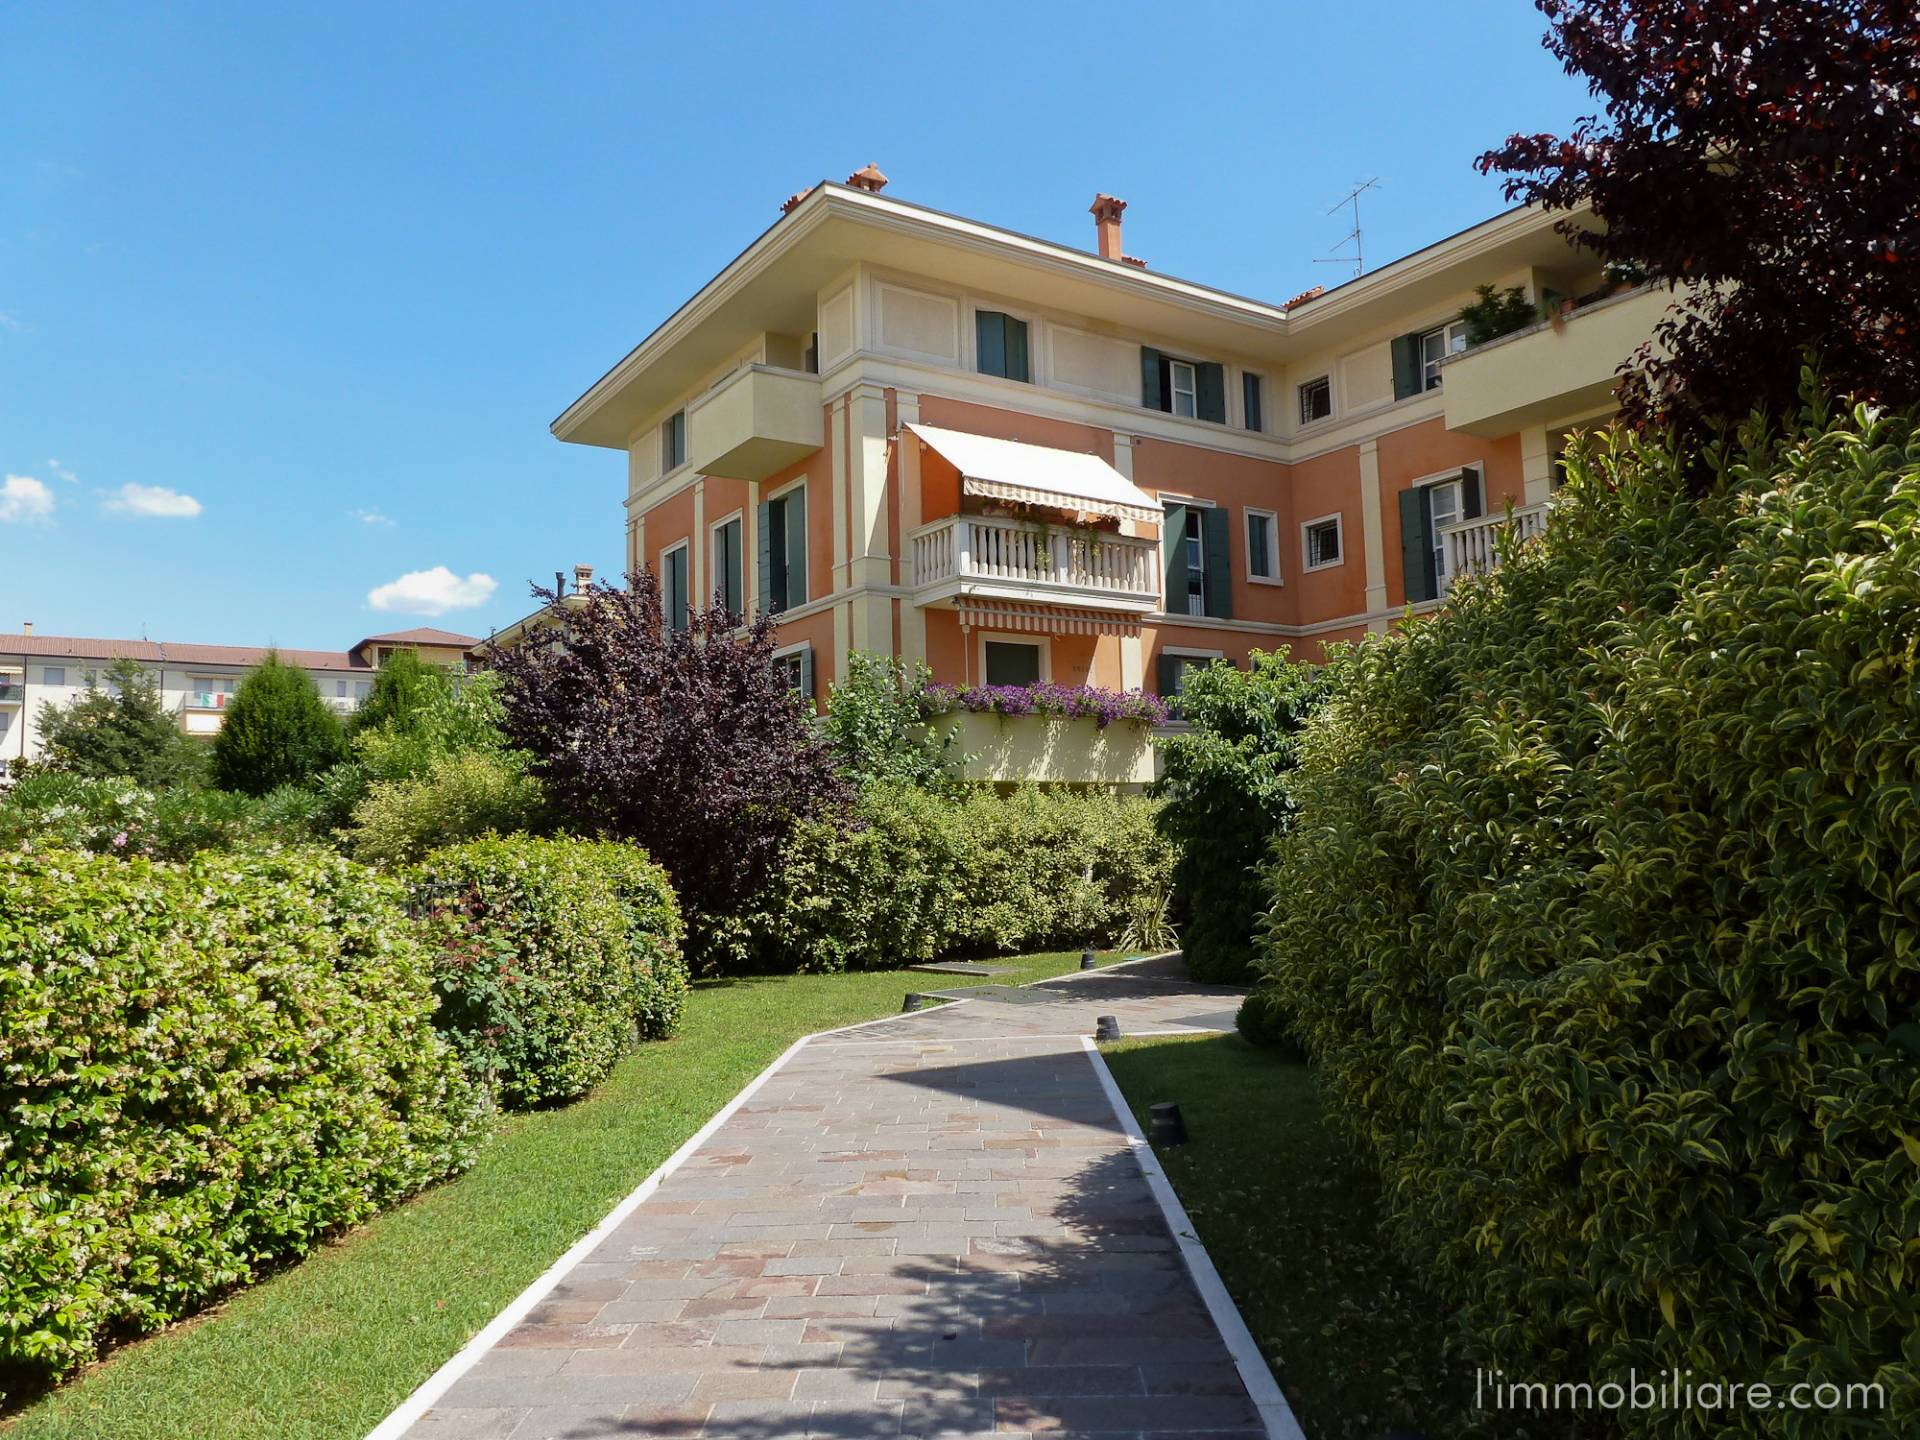 Appartamento in affitto a Verona, 2 locali, zona Zona: 4 . Saval - Borgo Milano - Chievo, prezzo € 650 | CambioCasa.it